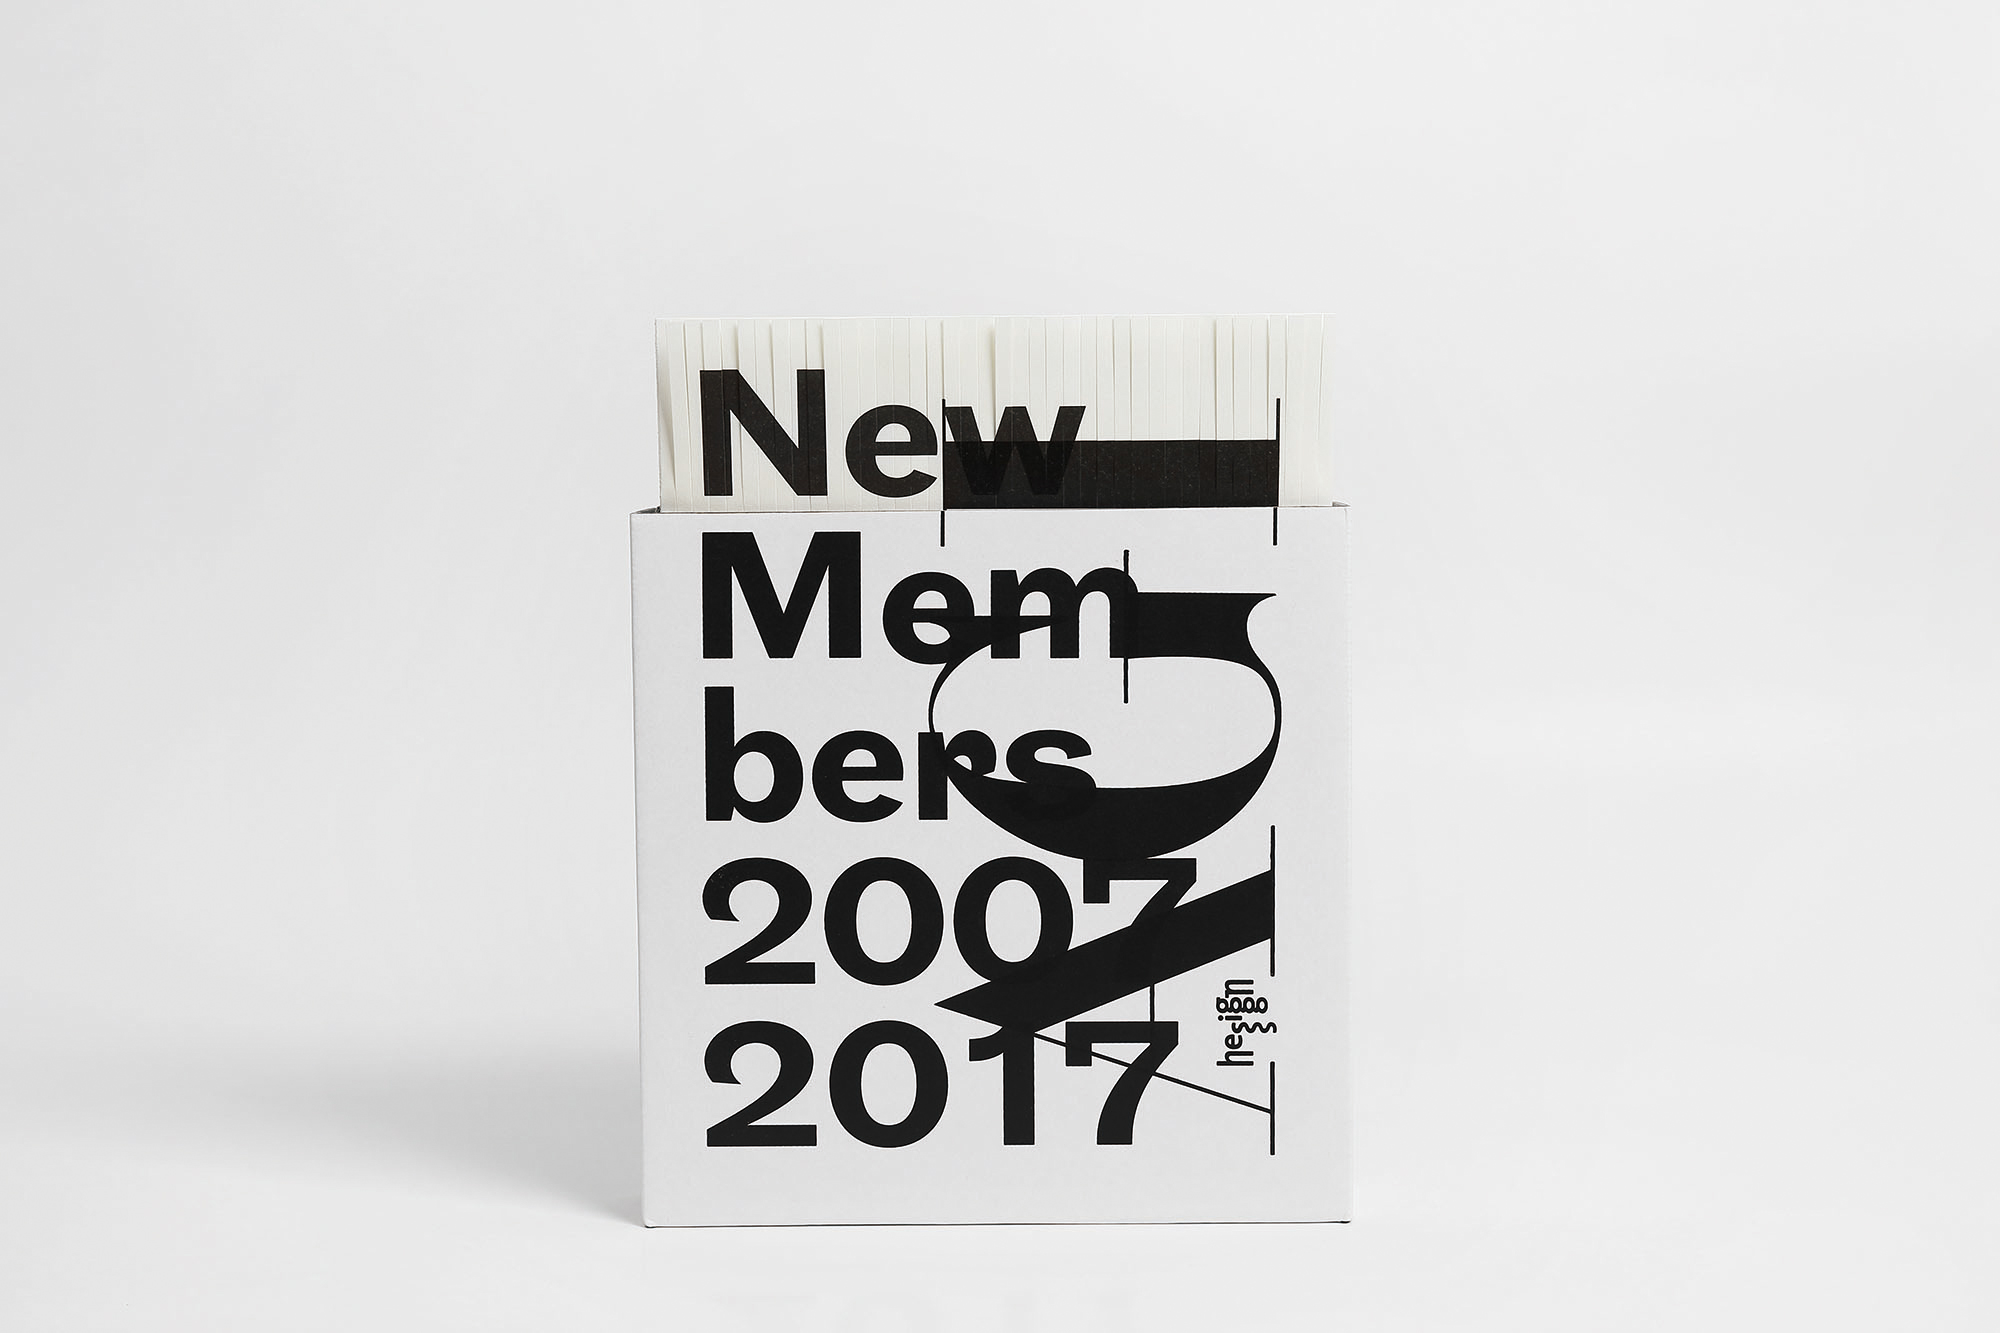 国际平面设计联盟2007至2017年二百余位新会员设计作品 